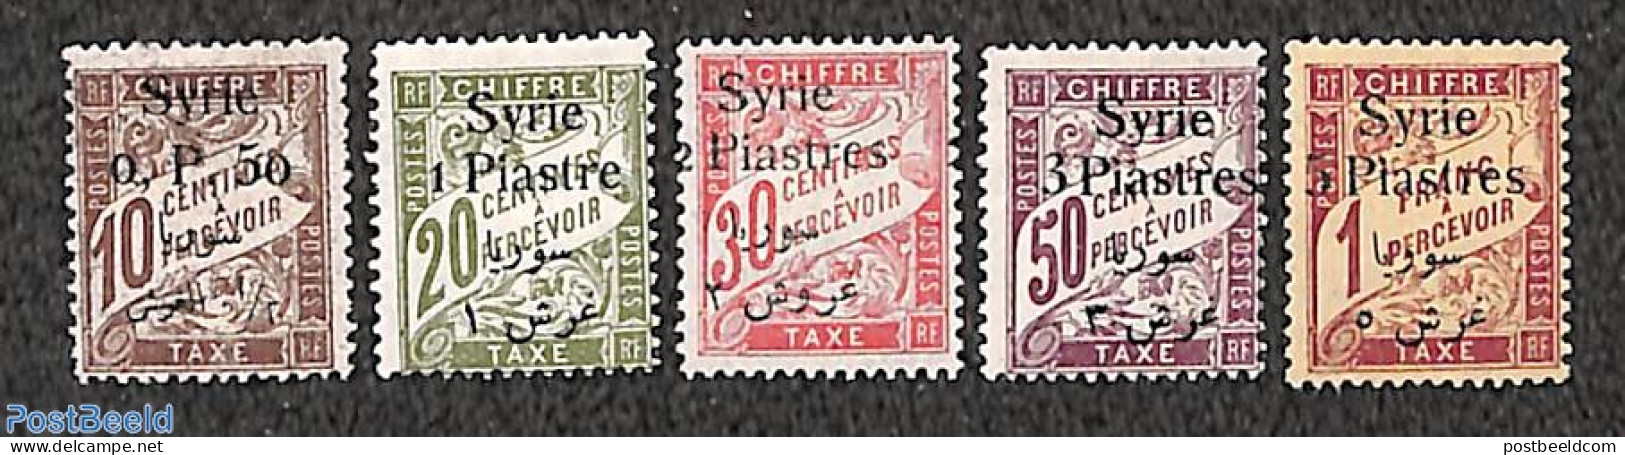 Syria 1924 Postage Due 5v, Unused (hinged) - Syrië